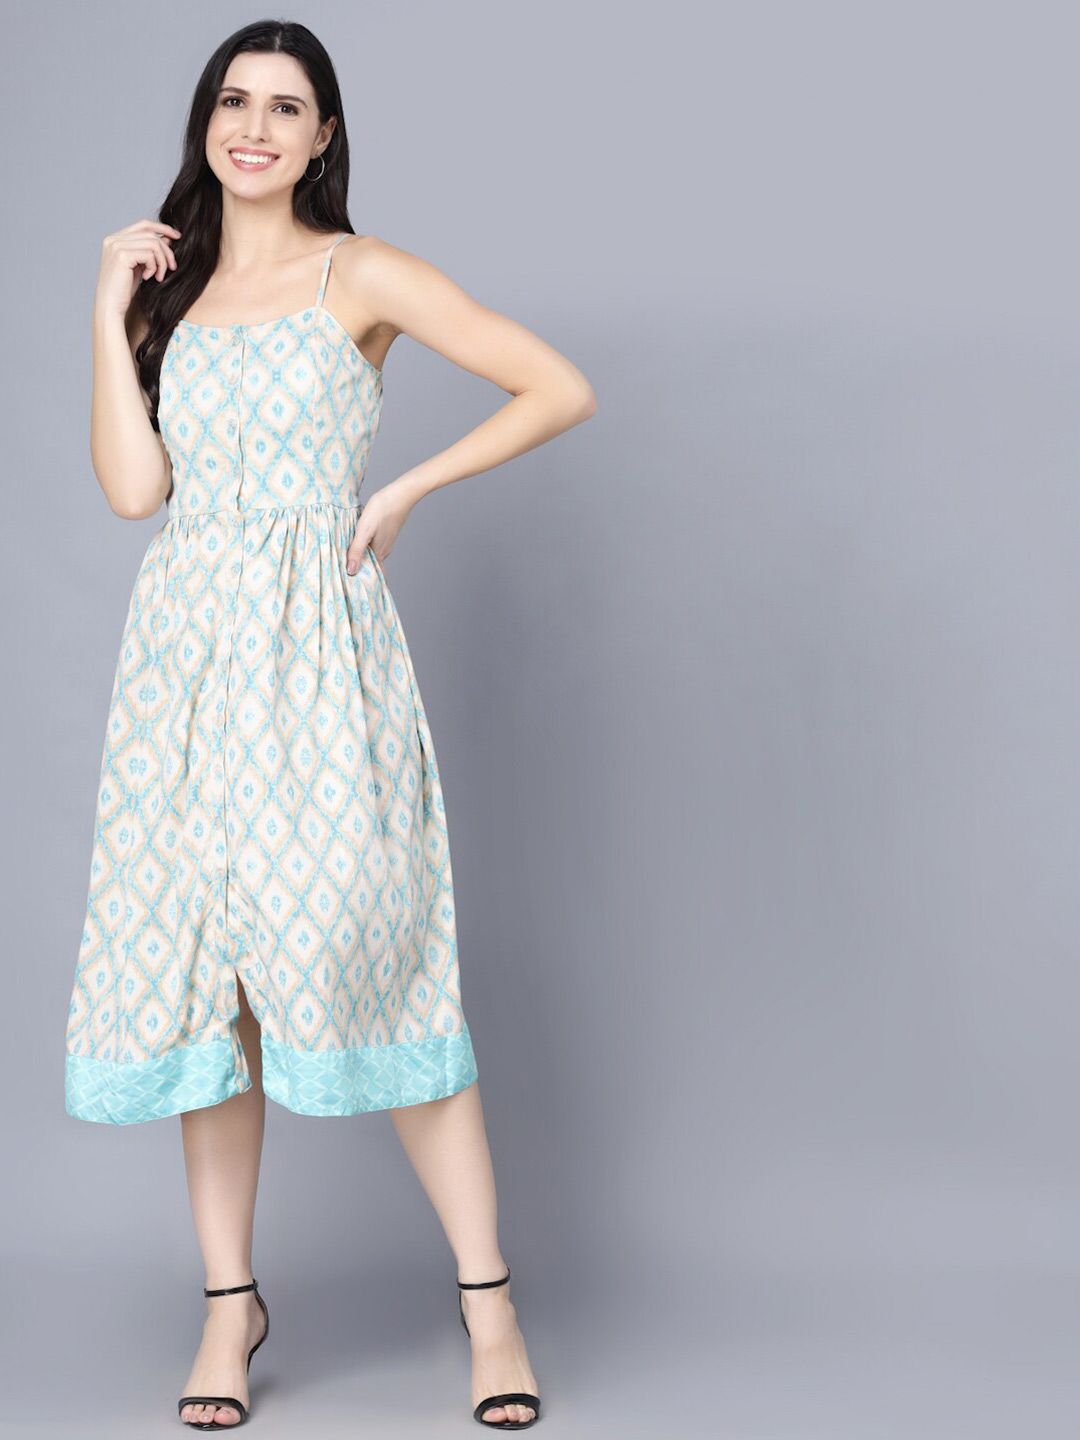 Myshka Multicoloured Floral Organic Cotton Crepe Midi Dress Price in India